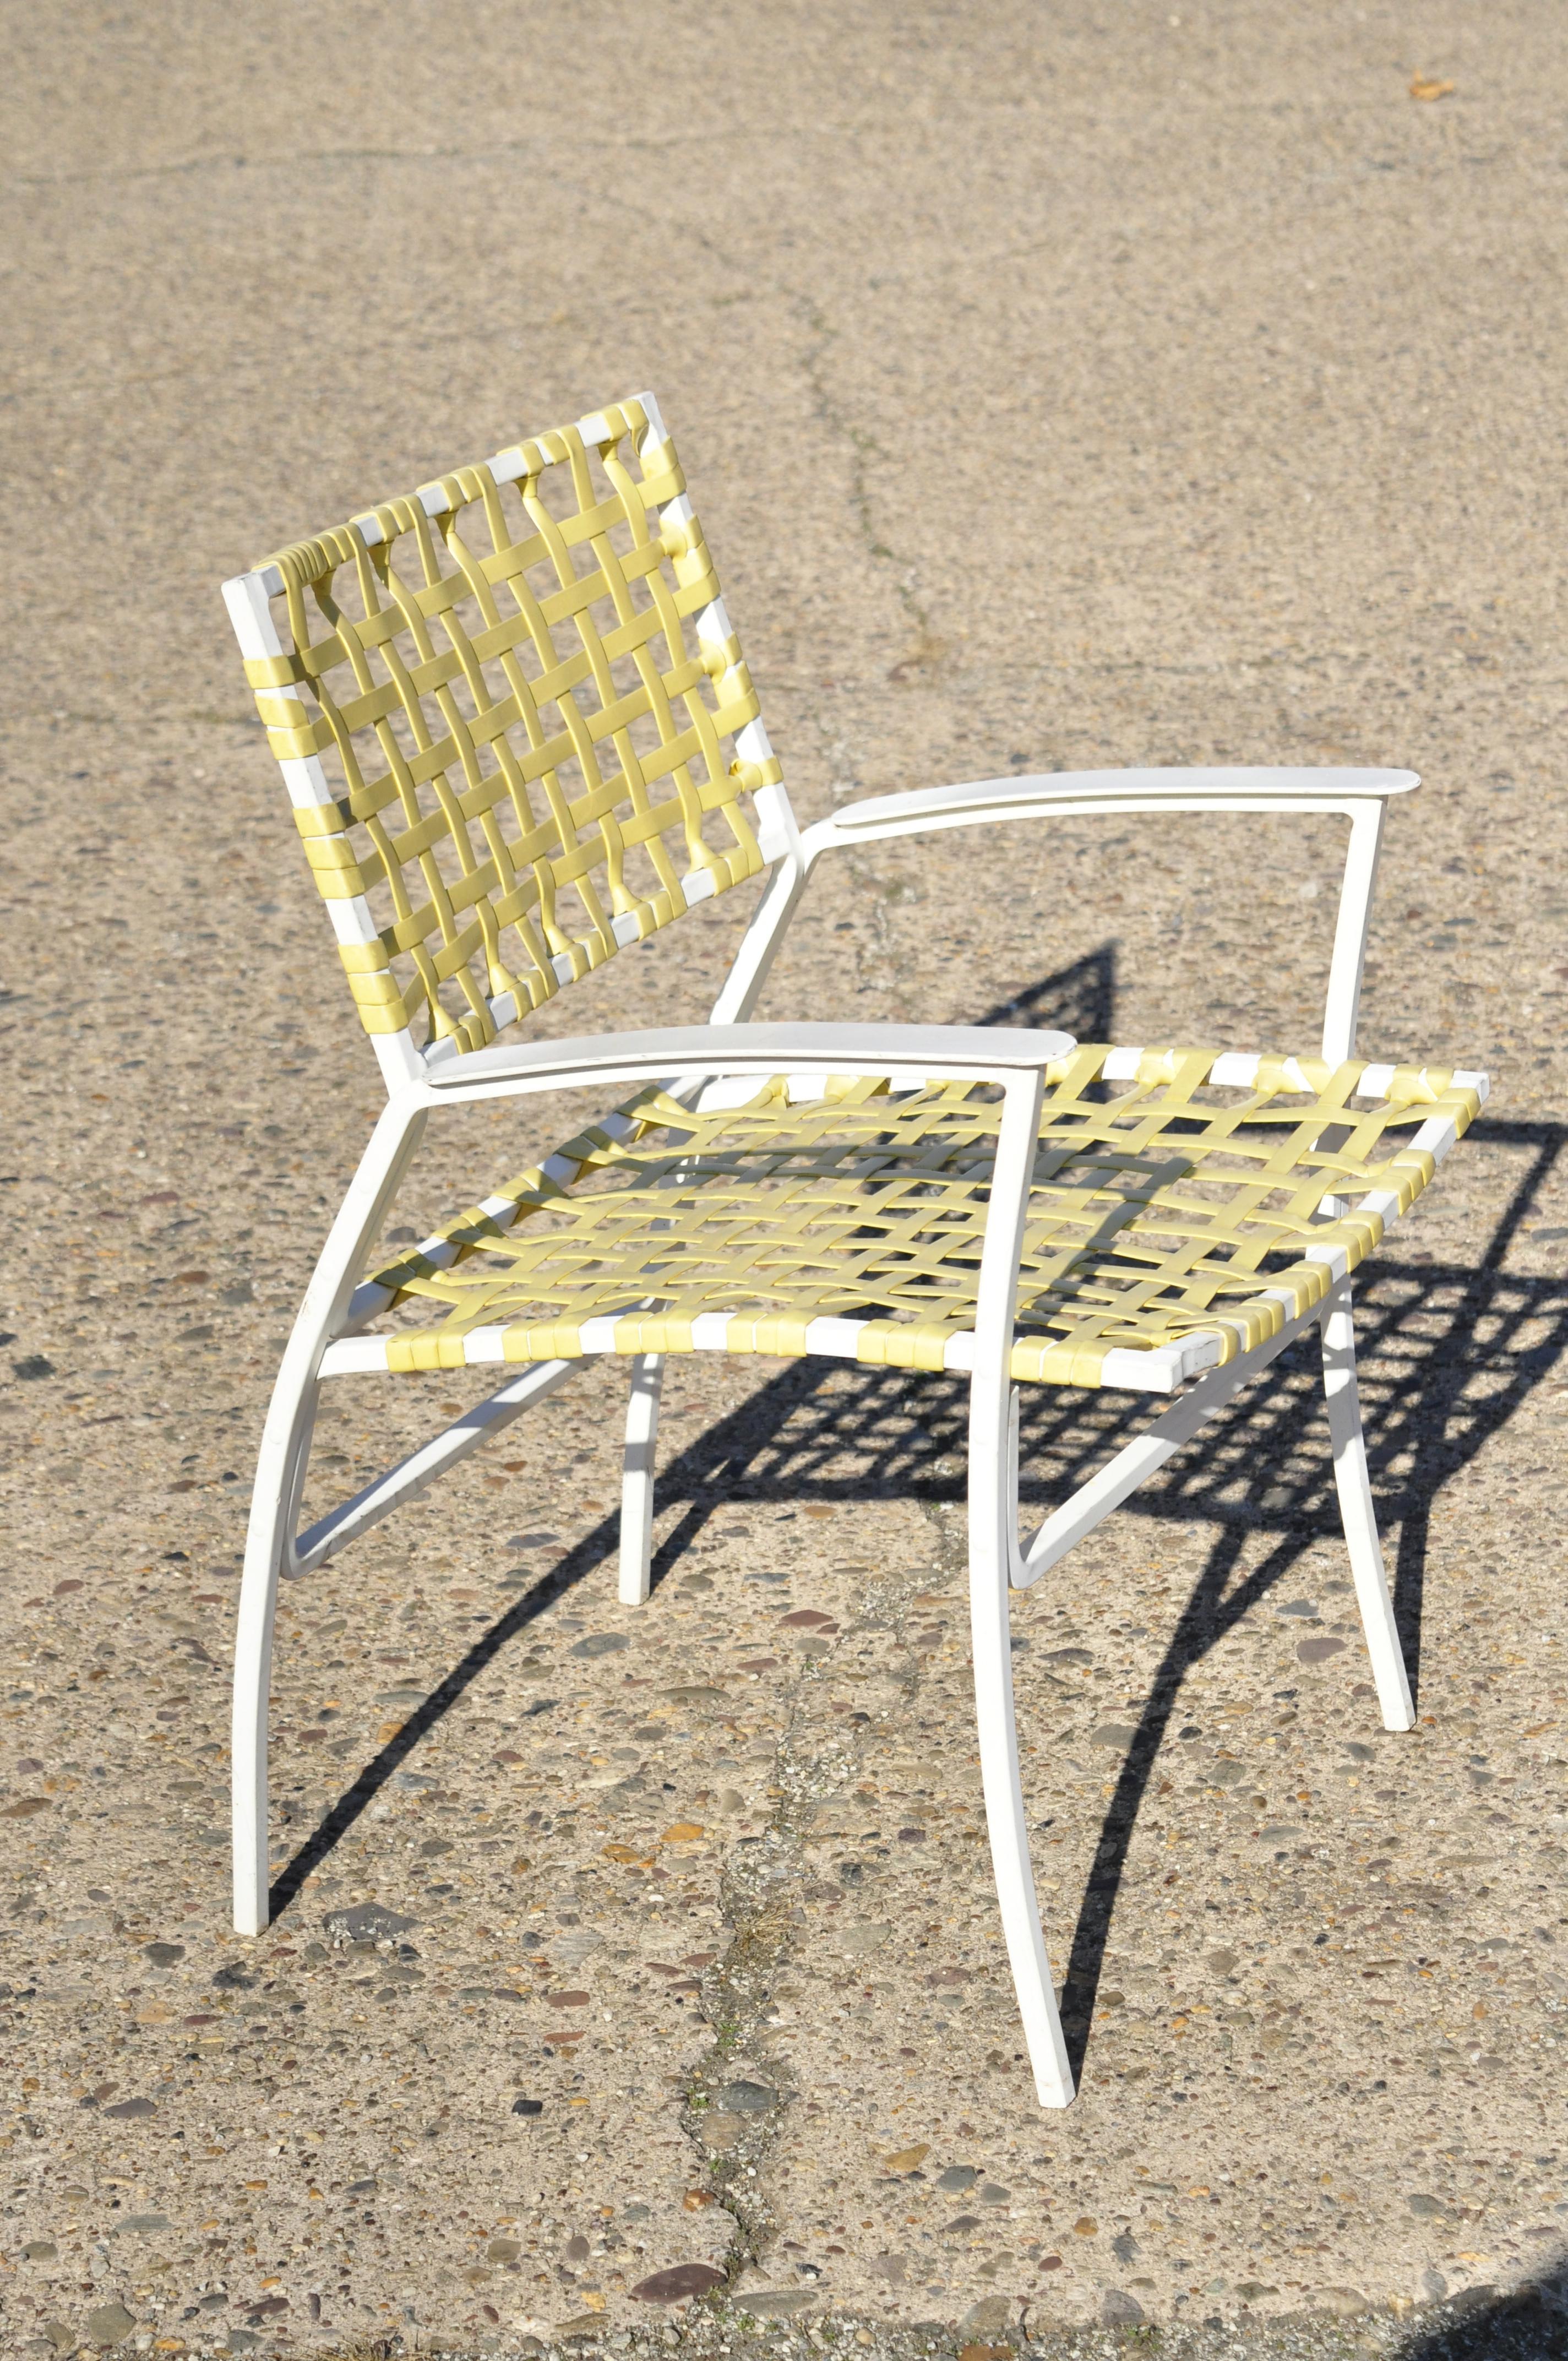 Medallion aluminium jaune vinyle tissé sangle patio POOL chaise longue, 1 chaise. La liste est pour 1 chaise. Actuellement 3 disponibles. L'article comprend un siège et un dossier en vinyle tissé jaune, des cadres en aluminium moulé blanc, des